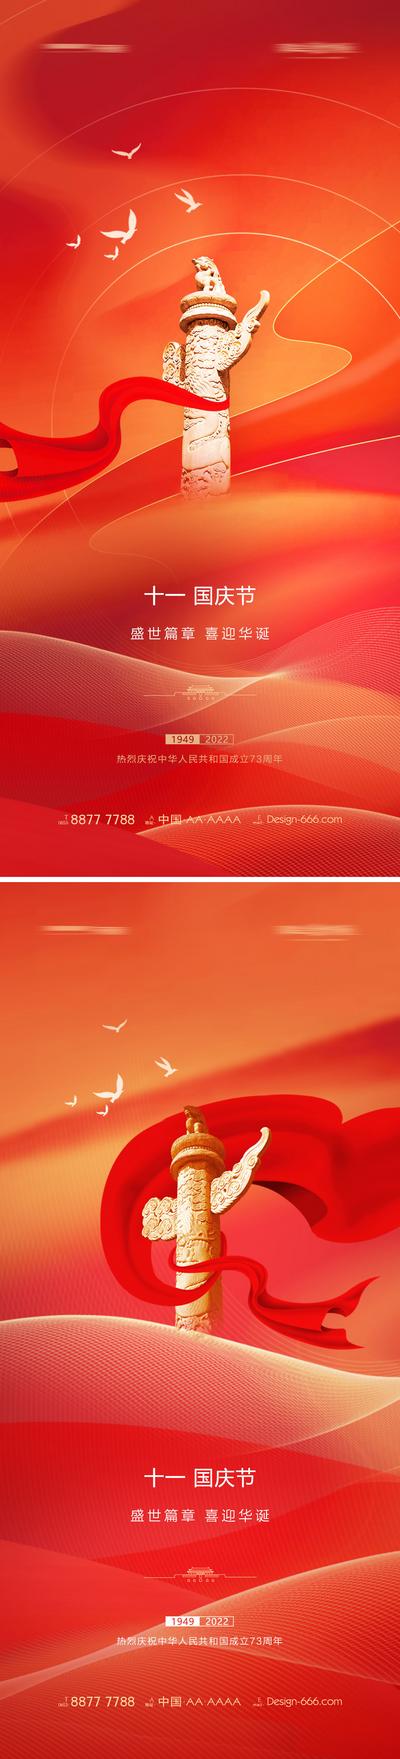 南门网 海报 地产 公历节日 国庆节 喜迎华诞 质感背景